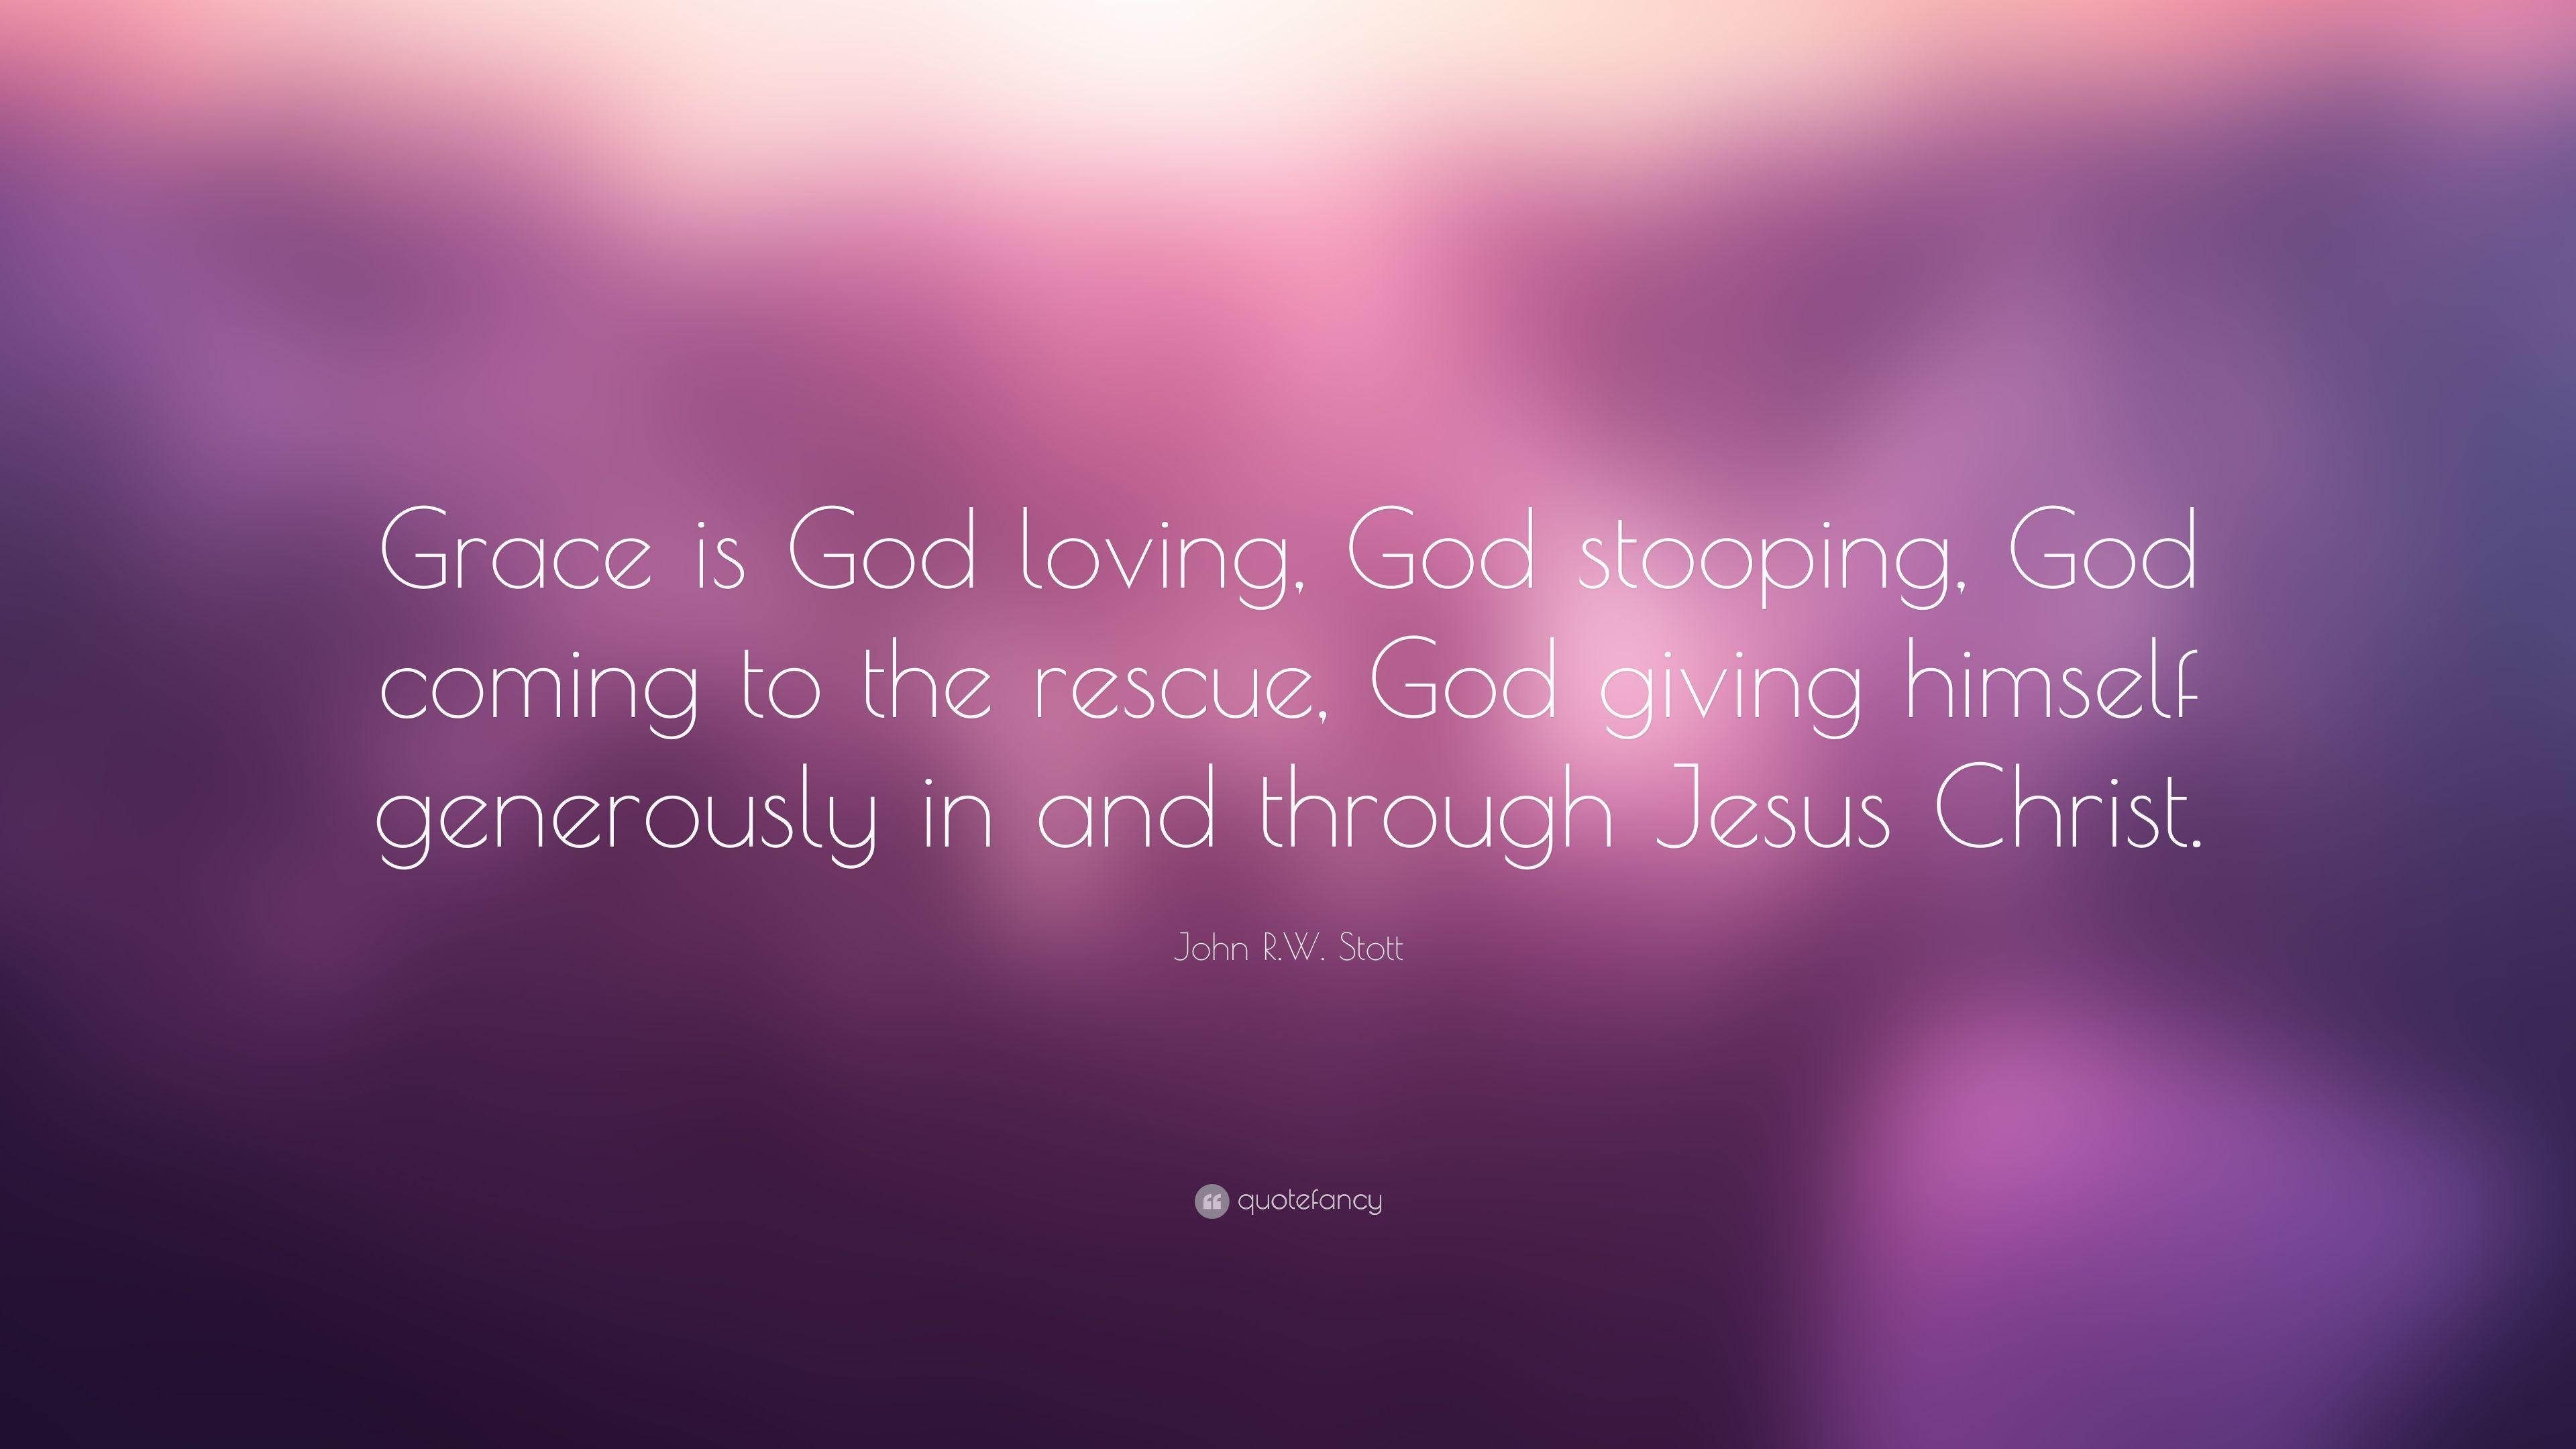 John R.W. Stott Quote: “Grace is God loving, God stooping, God